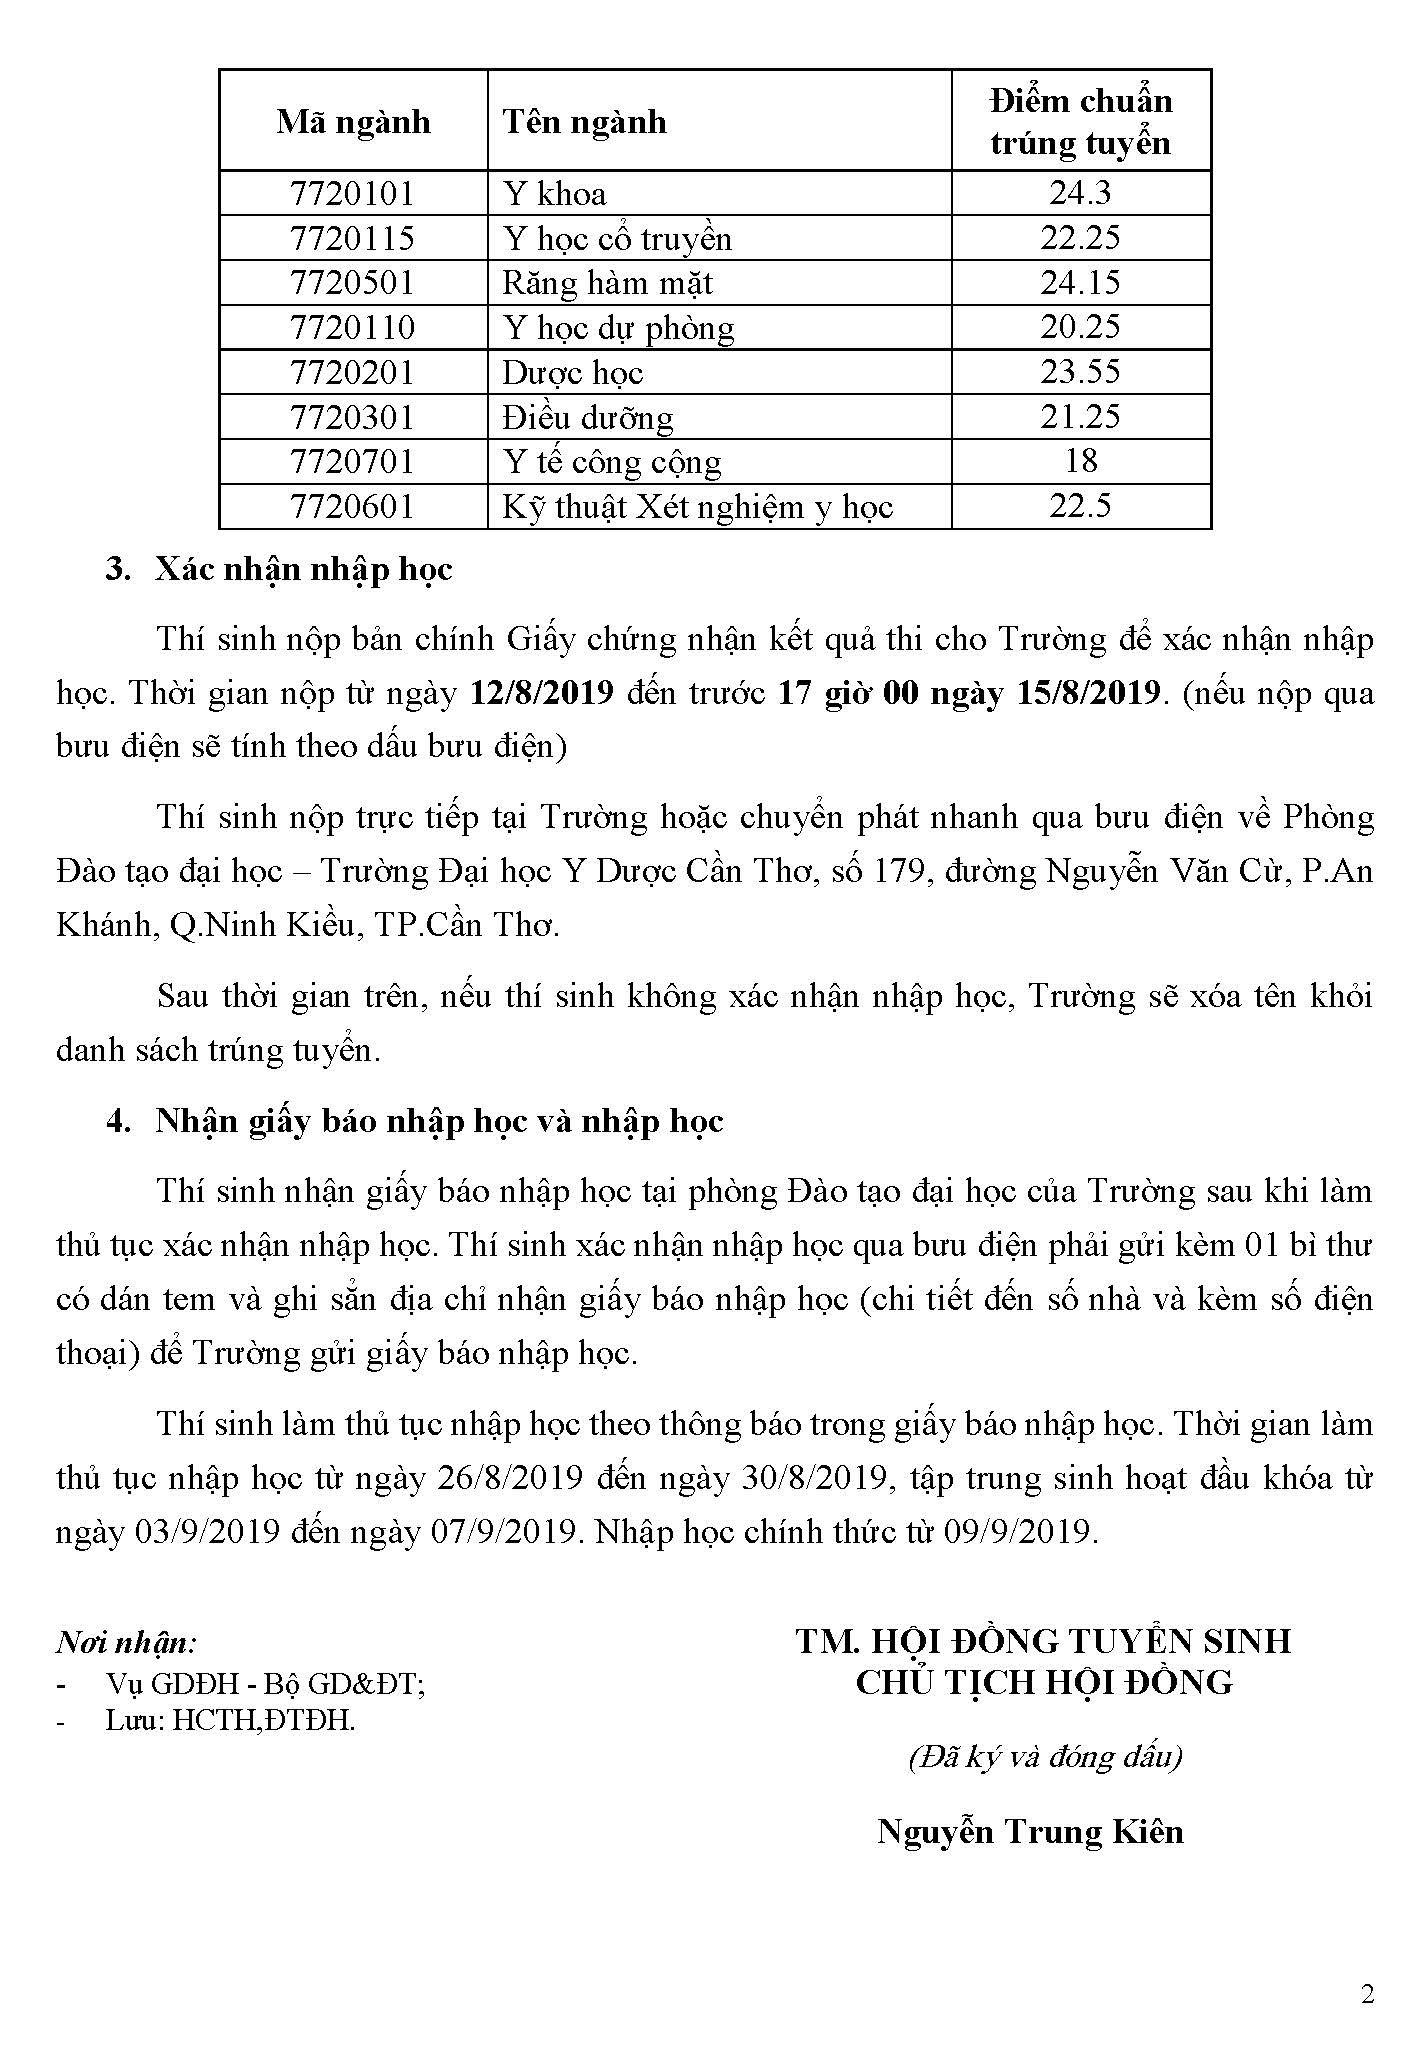 TB trung tuyen - Dai hoc he chinh quy_Page_1.jpg